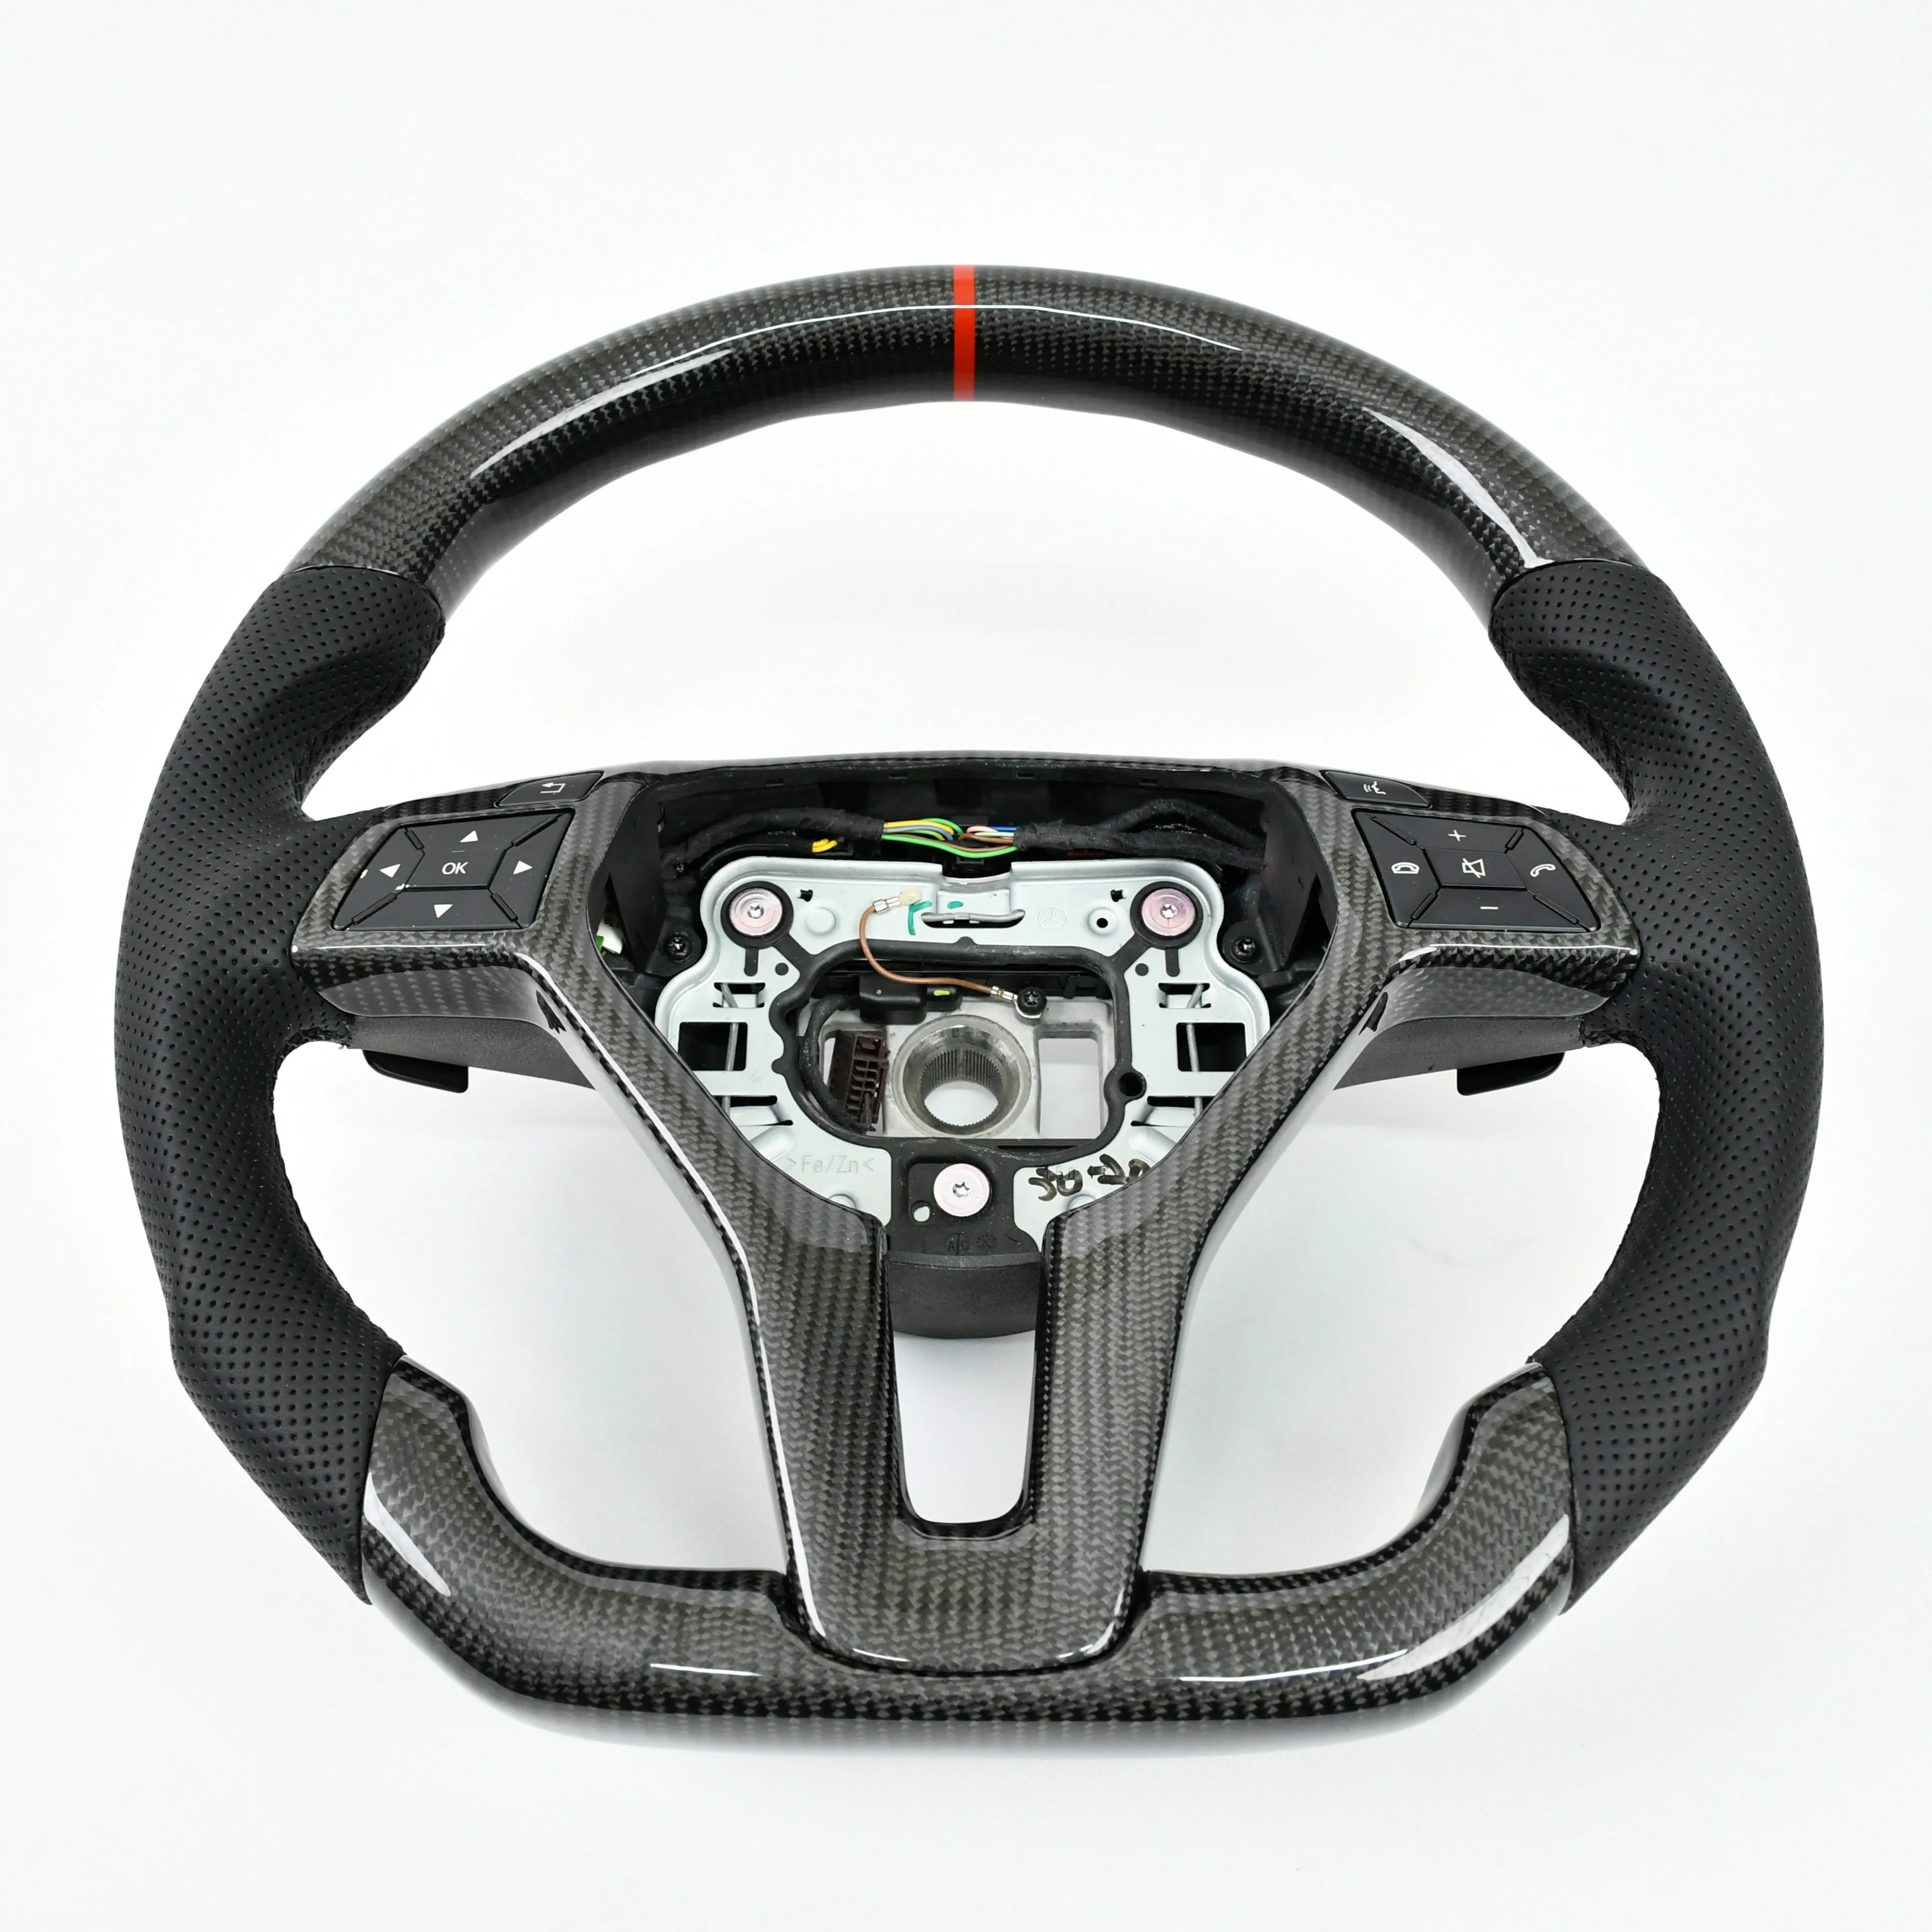 Handwerk Aangepaste Racing Real Carbon Fiber Stuurwiel Voor S-Klasse W211 W222 W223 A217 C216 C217 S65 Amg